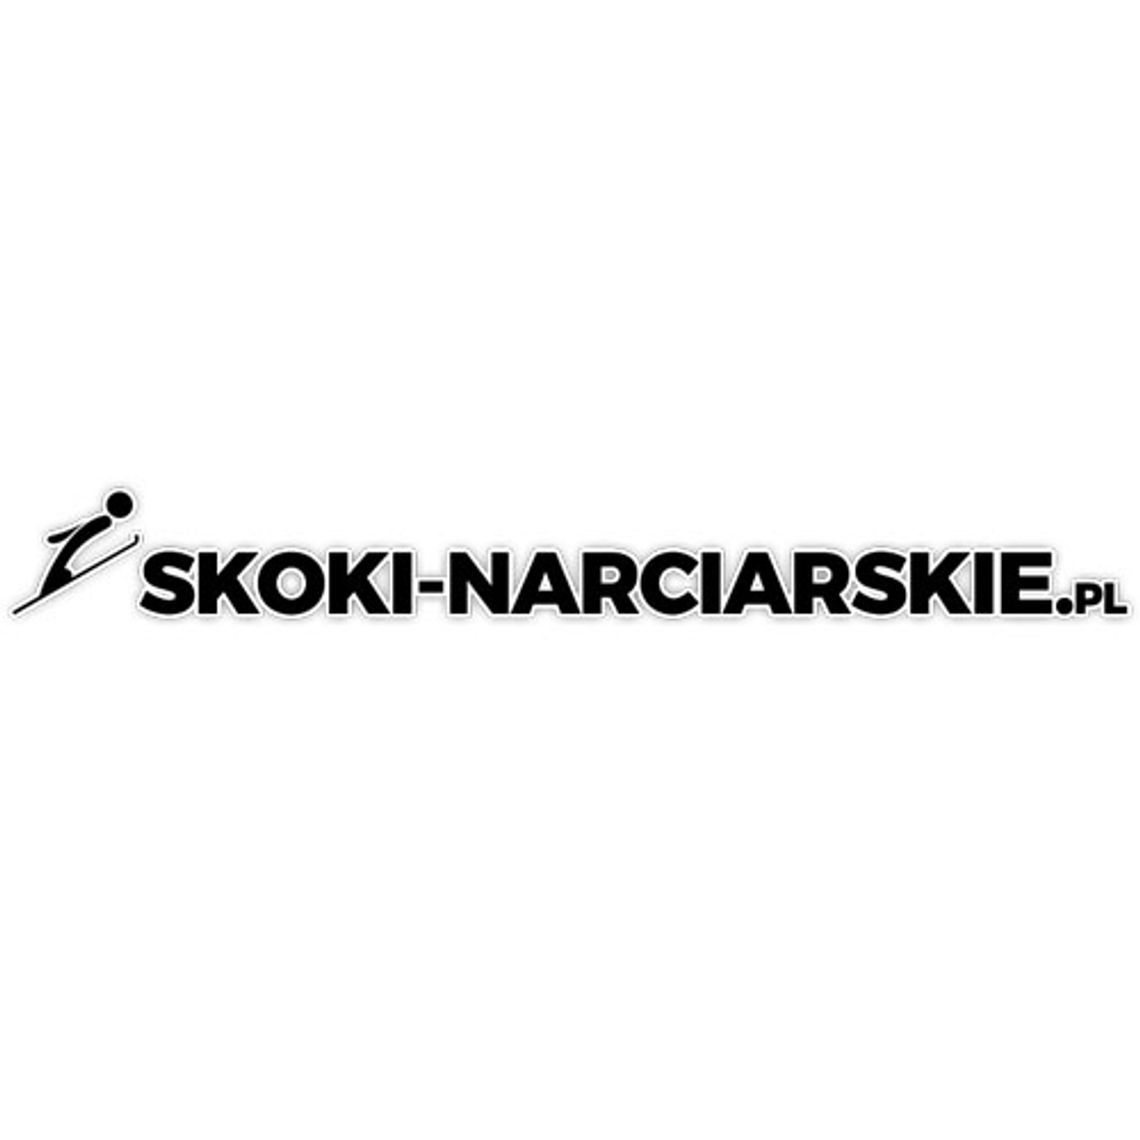 Skoki narciarskie wiadomości - Skoki-narciarskie.pl